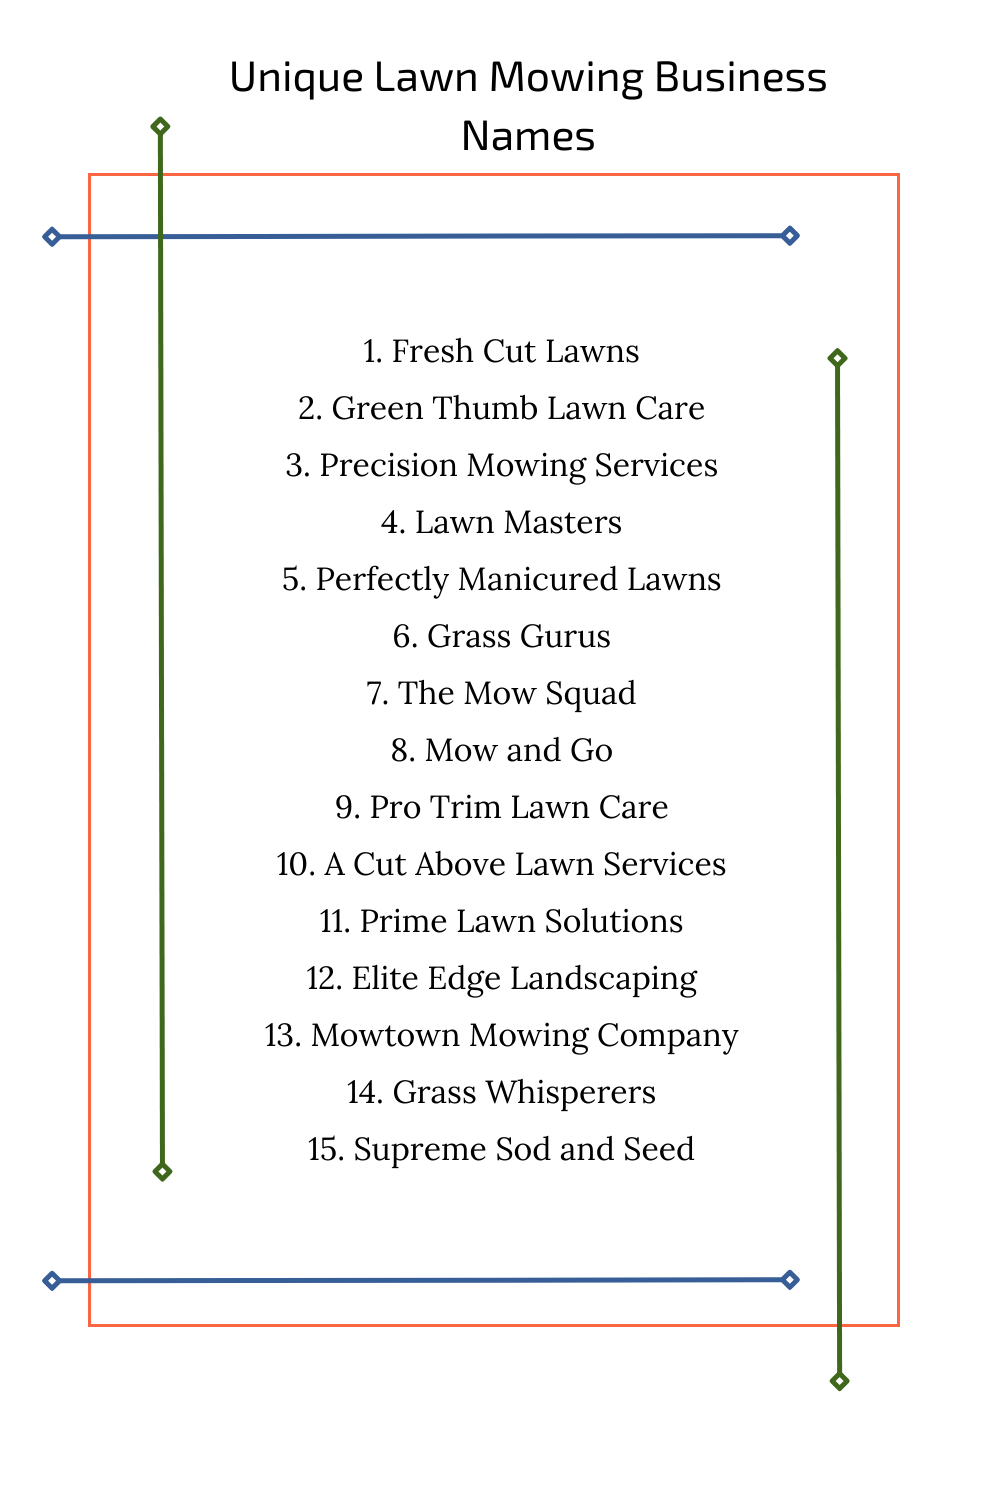 Unique Lawn Mowing Business Names